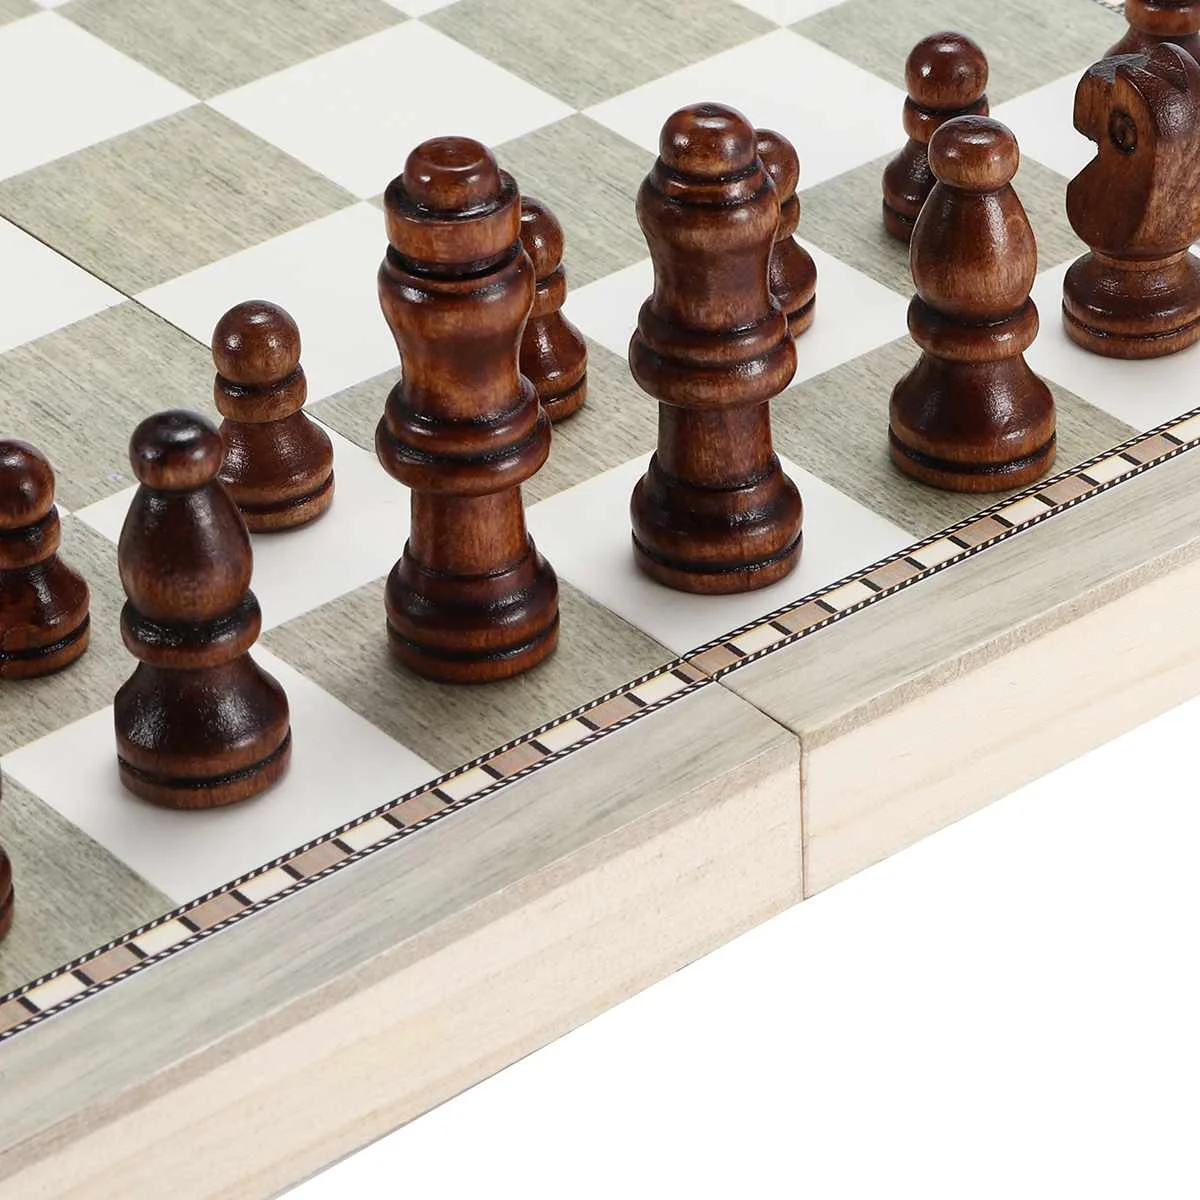 3 в 1 складной деревянный набор с шахматной доской дорожные игры шахматы нарды шашки игрушка шахматы развлечения игра настольные игрушки подарок